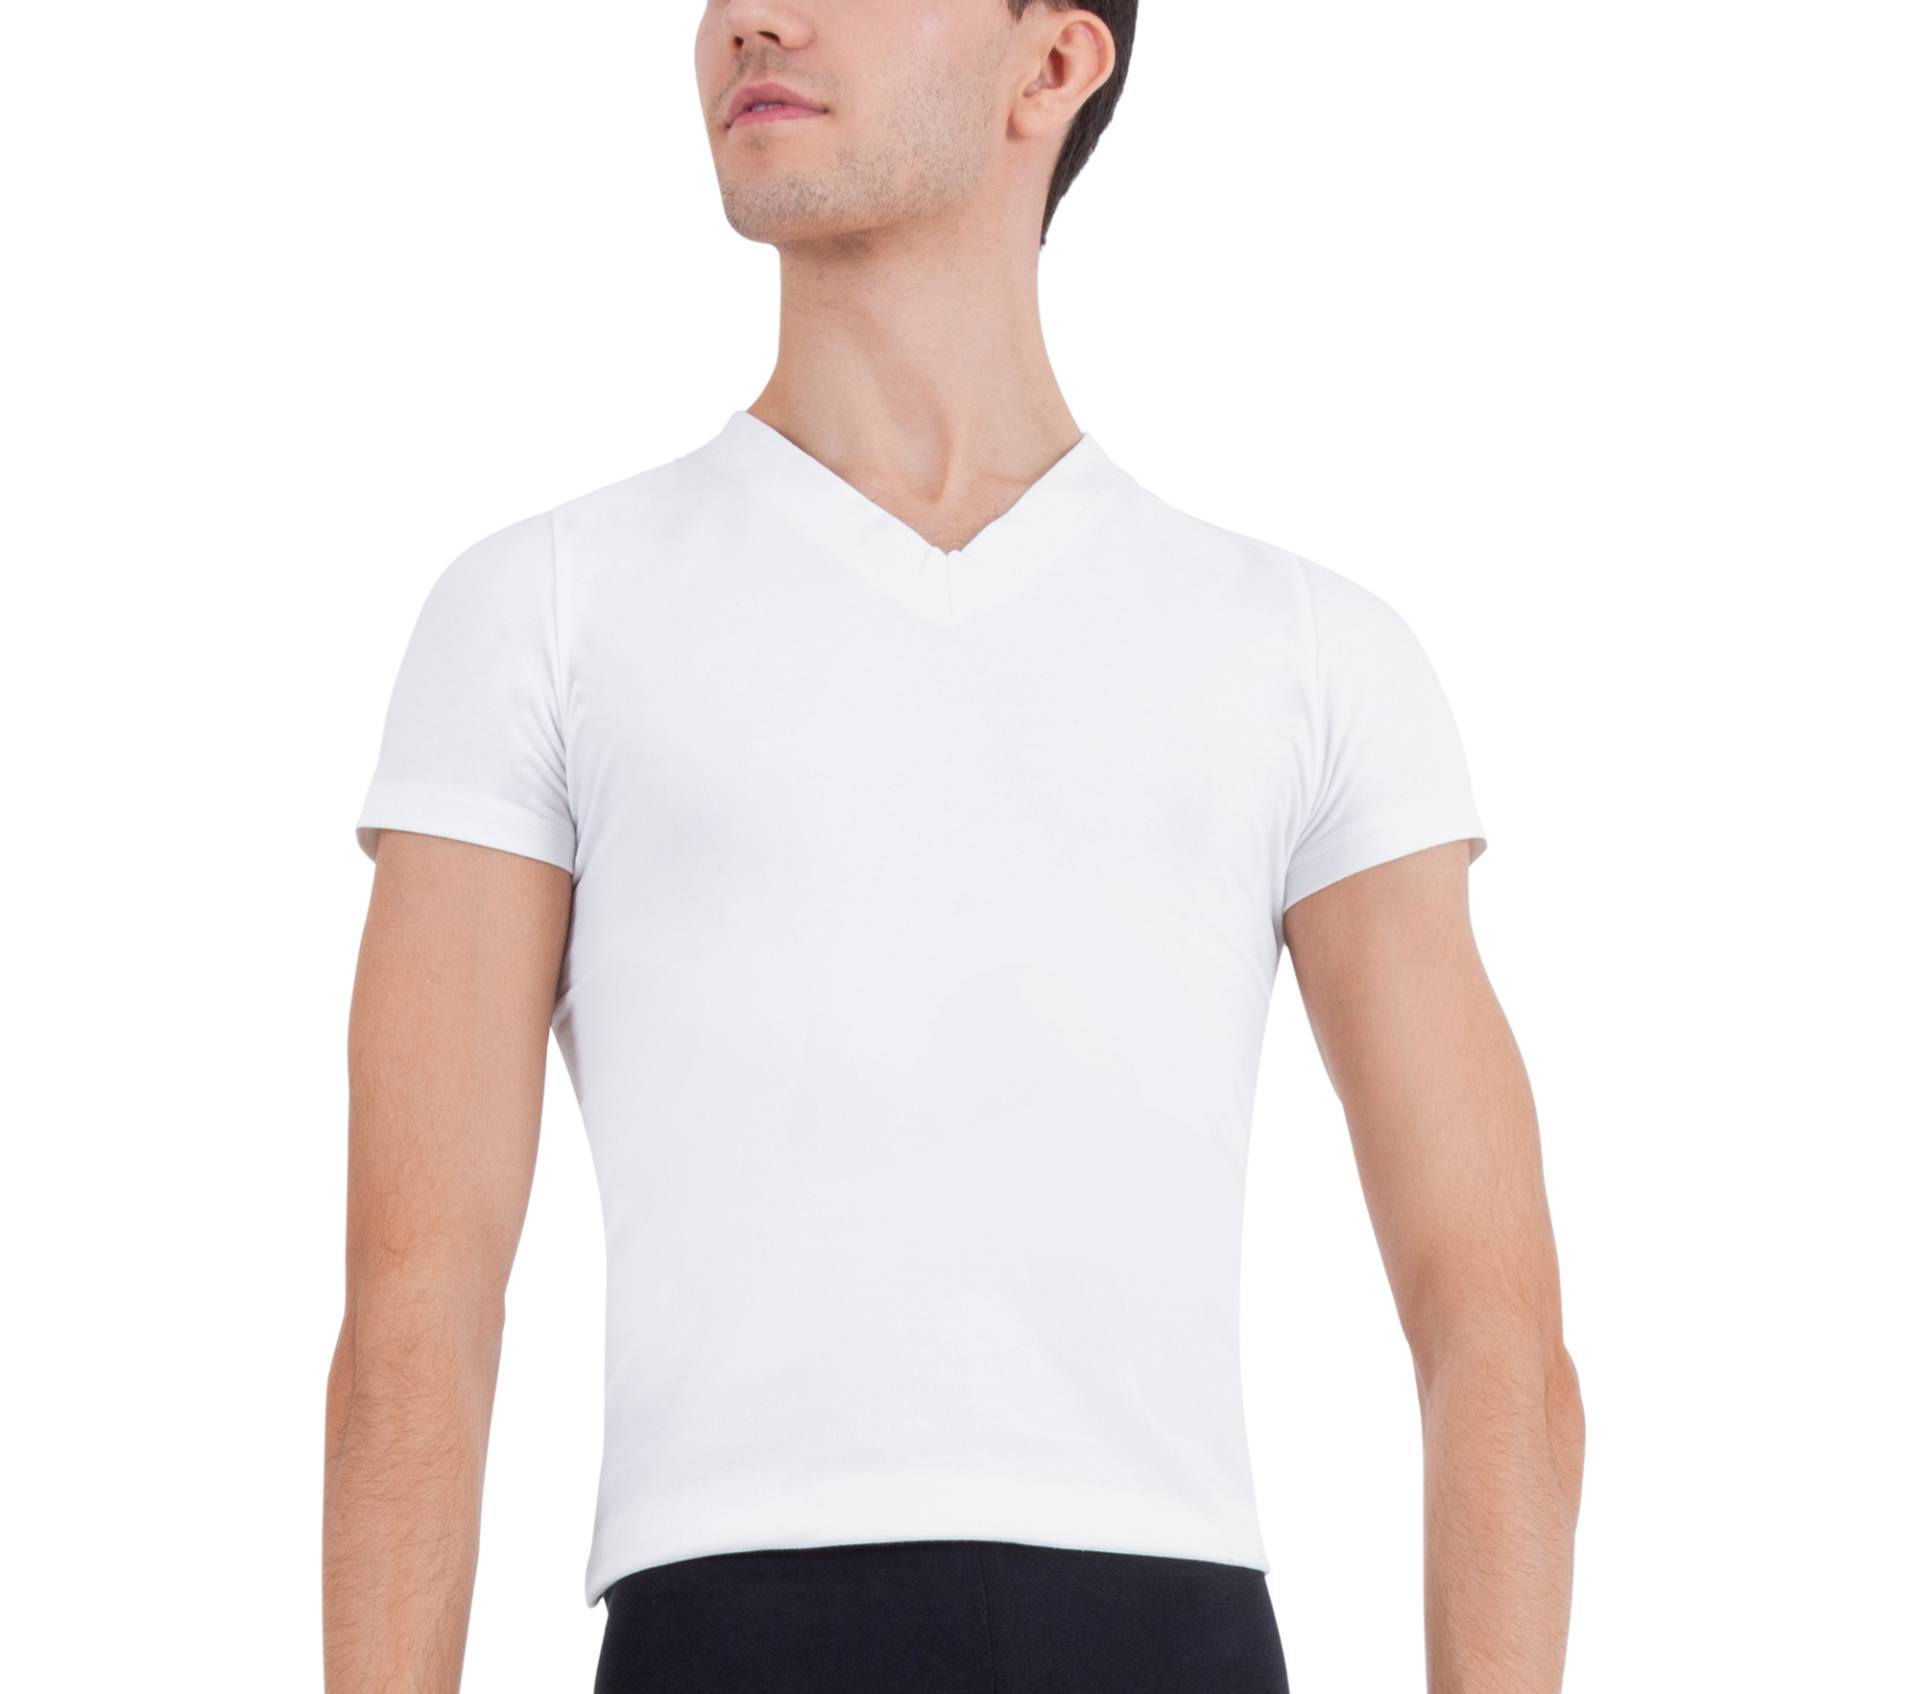 T-shirt - Männer für Damen - Baumwolle - Repetto von Repetto